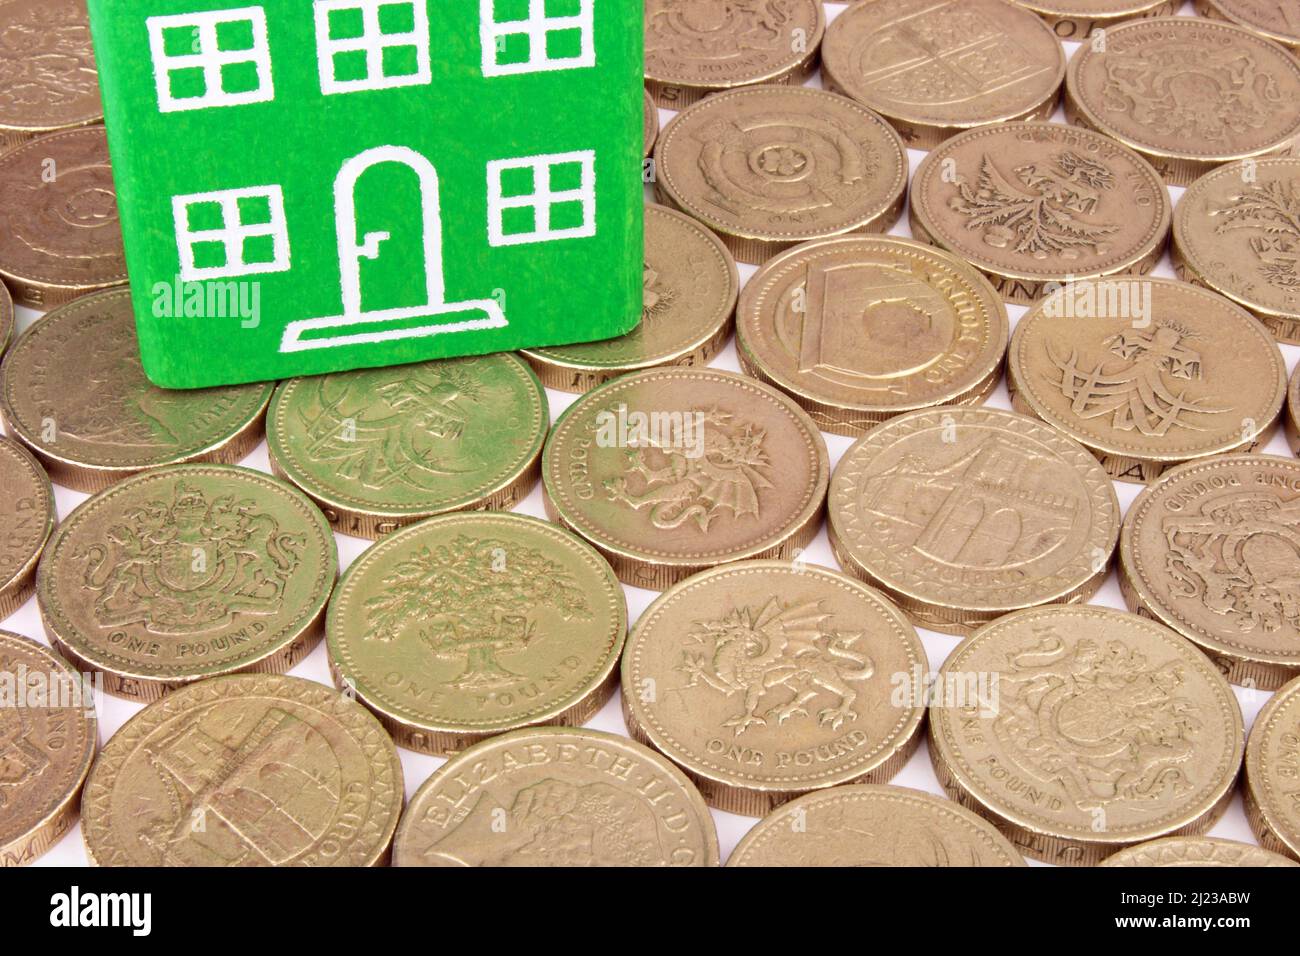 Una casa verde sobre una cama de monedas, una metáfora de los ahorros renovables. Foto de stock